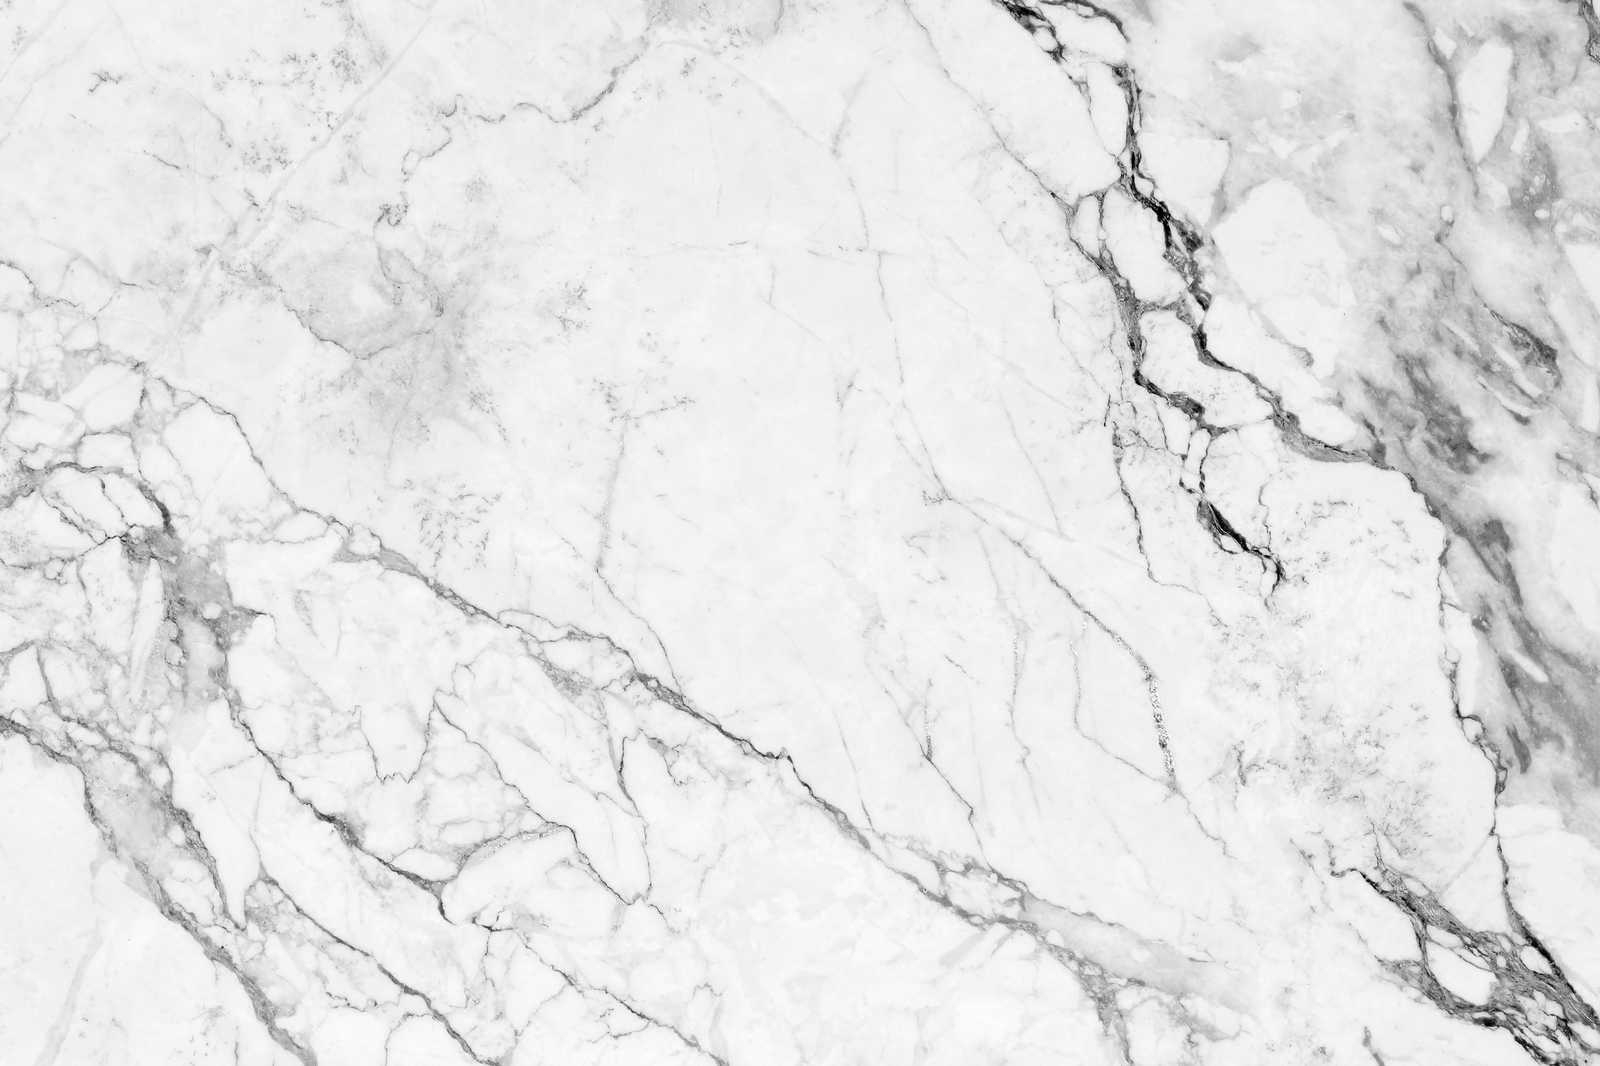             Toile aspect marbre moderne - 0,90 m x 0,60 m
        